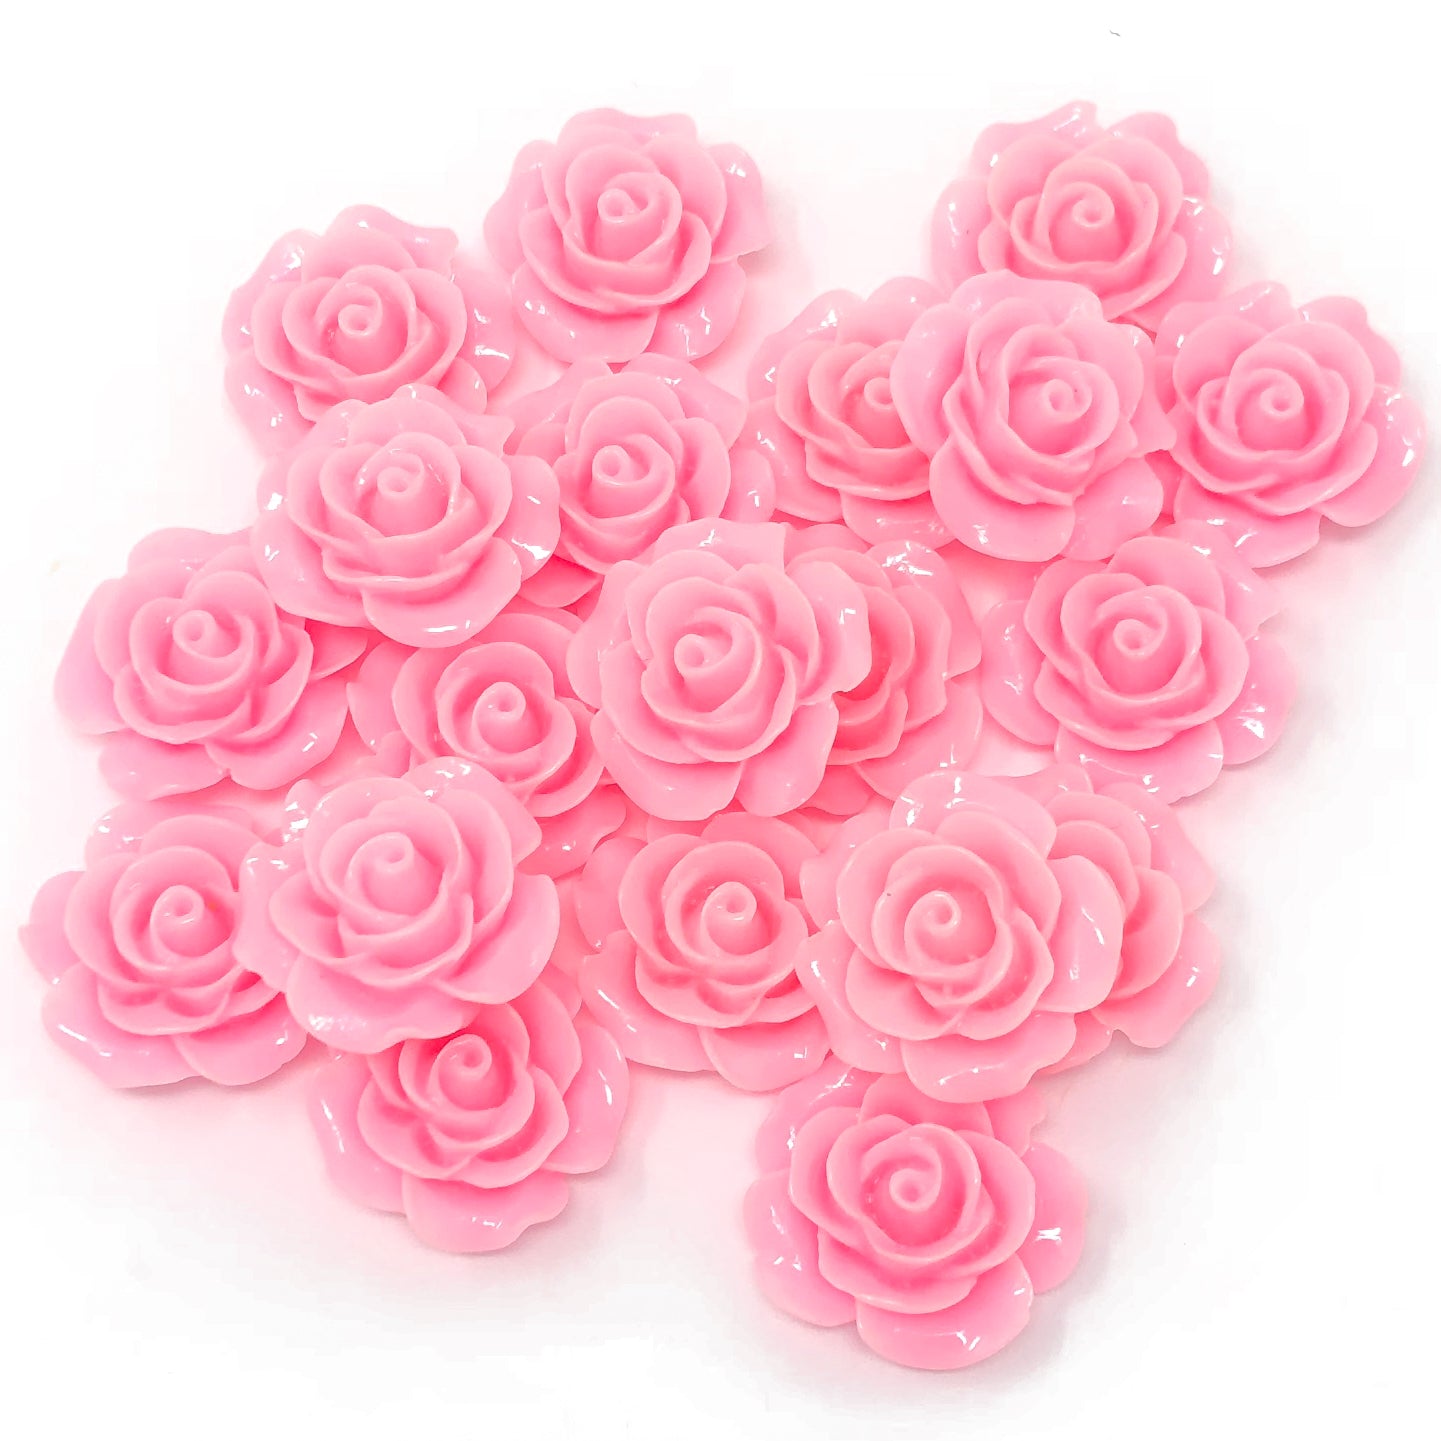 Light Pink 20mm Resin Roses Flatbacks - Pack of 20